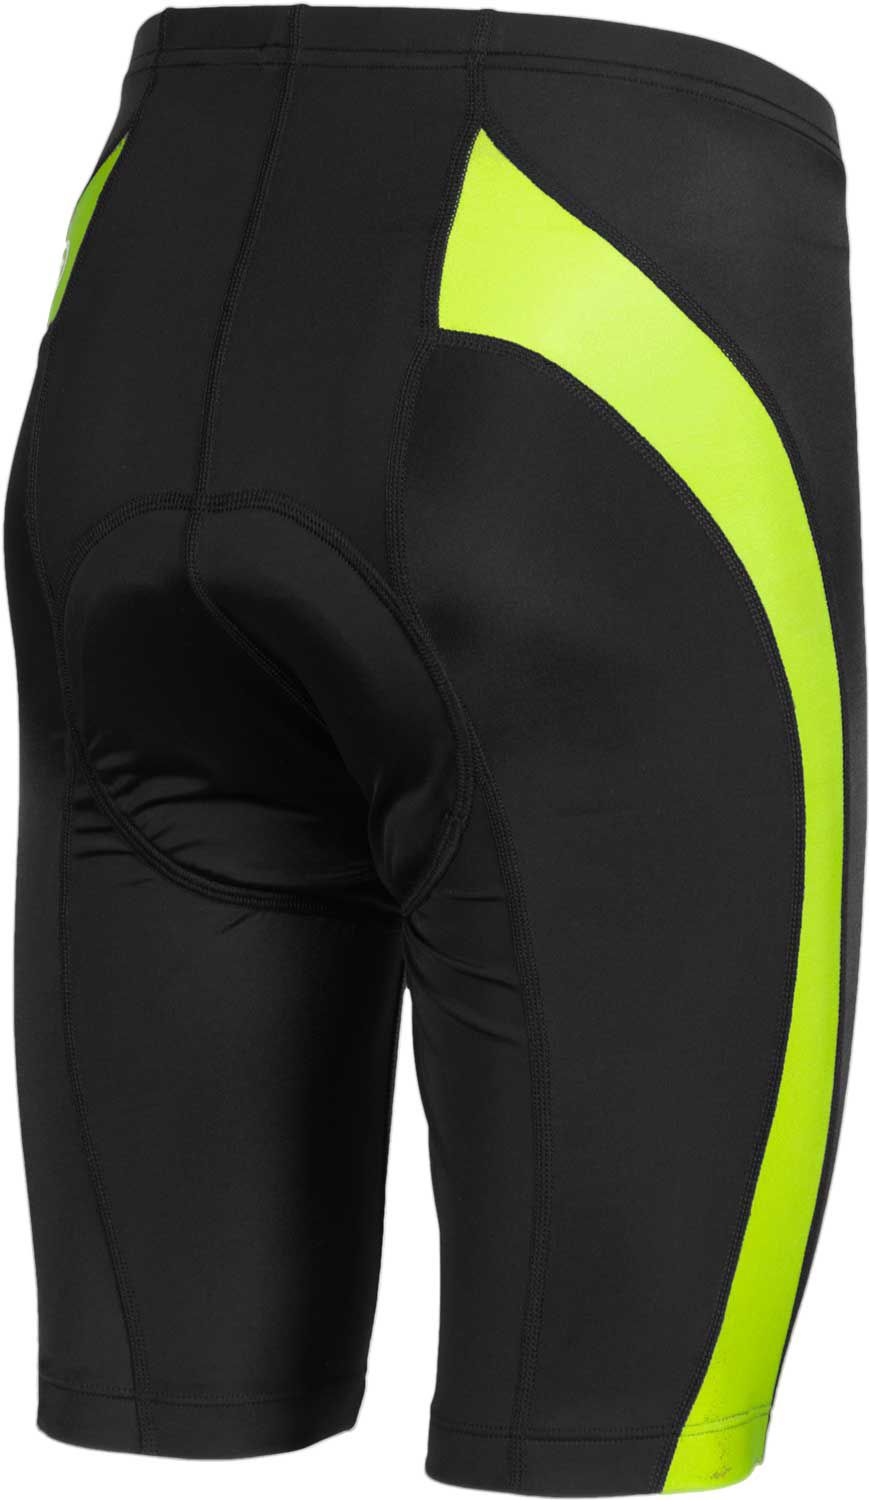 biking shorts product image · canari menu0027s blade gel cycling shorts DQQCCJU